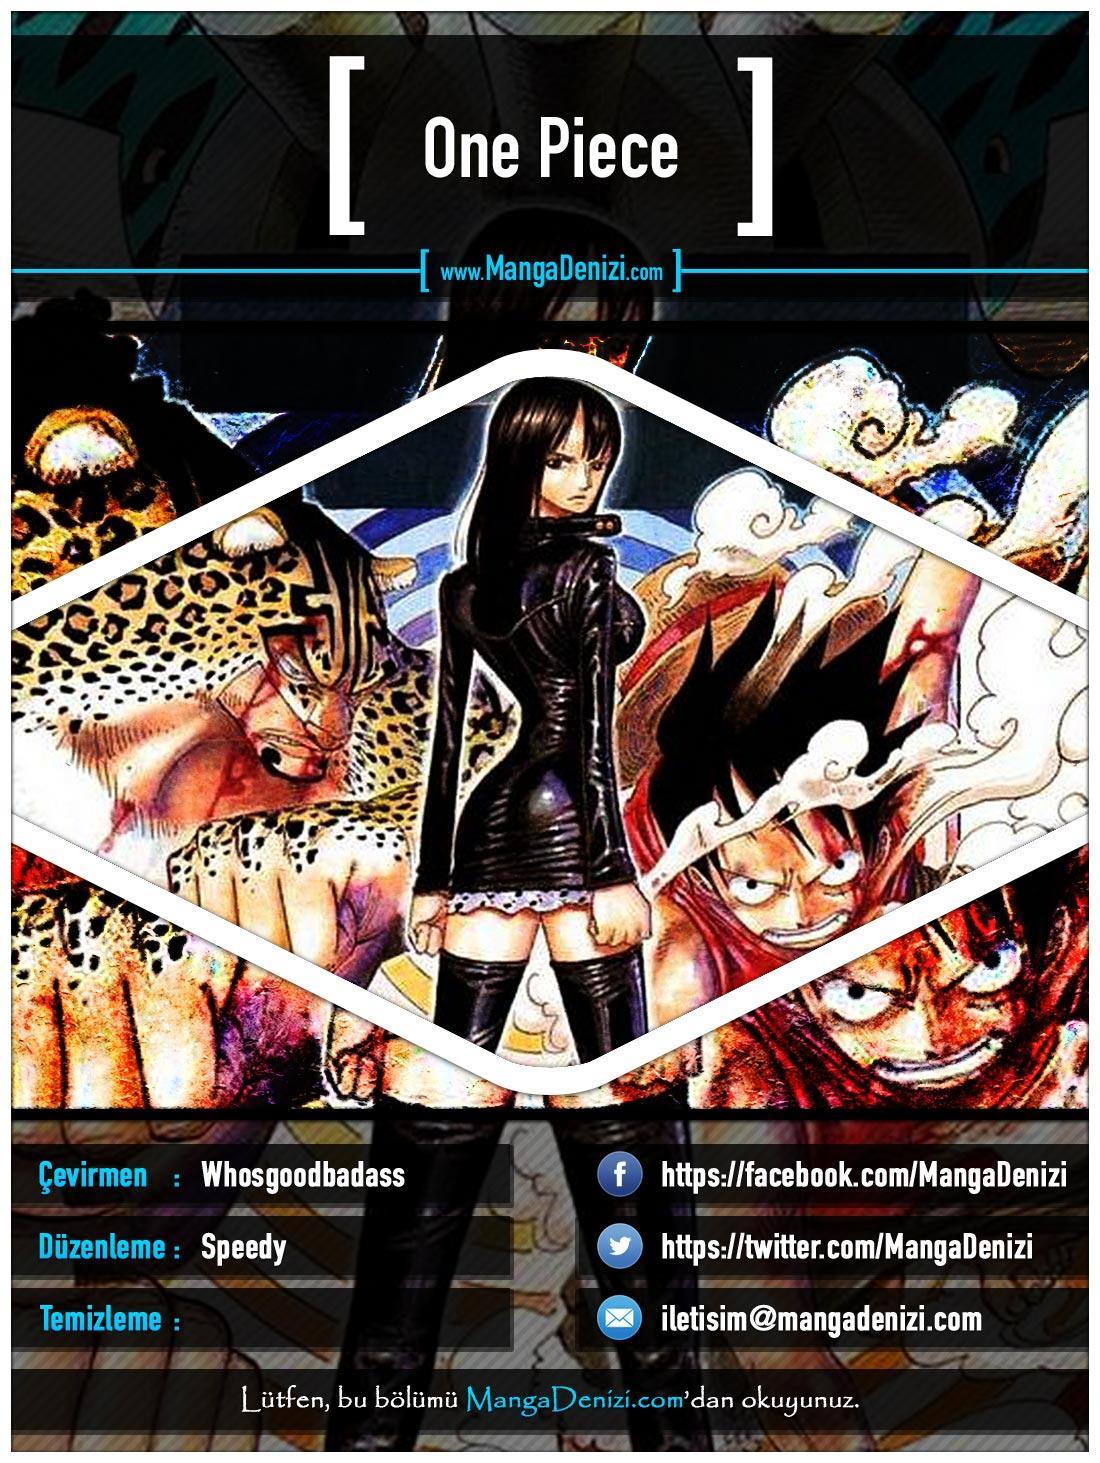 One Piece [Renkli] mangasının 0427 bölümünün 1. sayfasını okuyorsunuz.